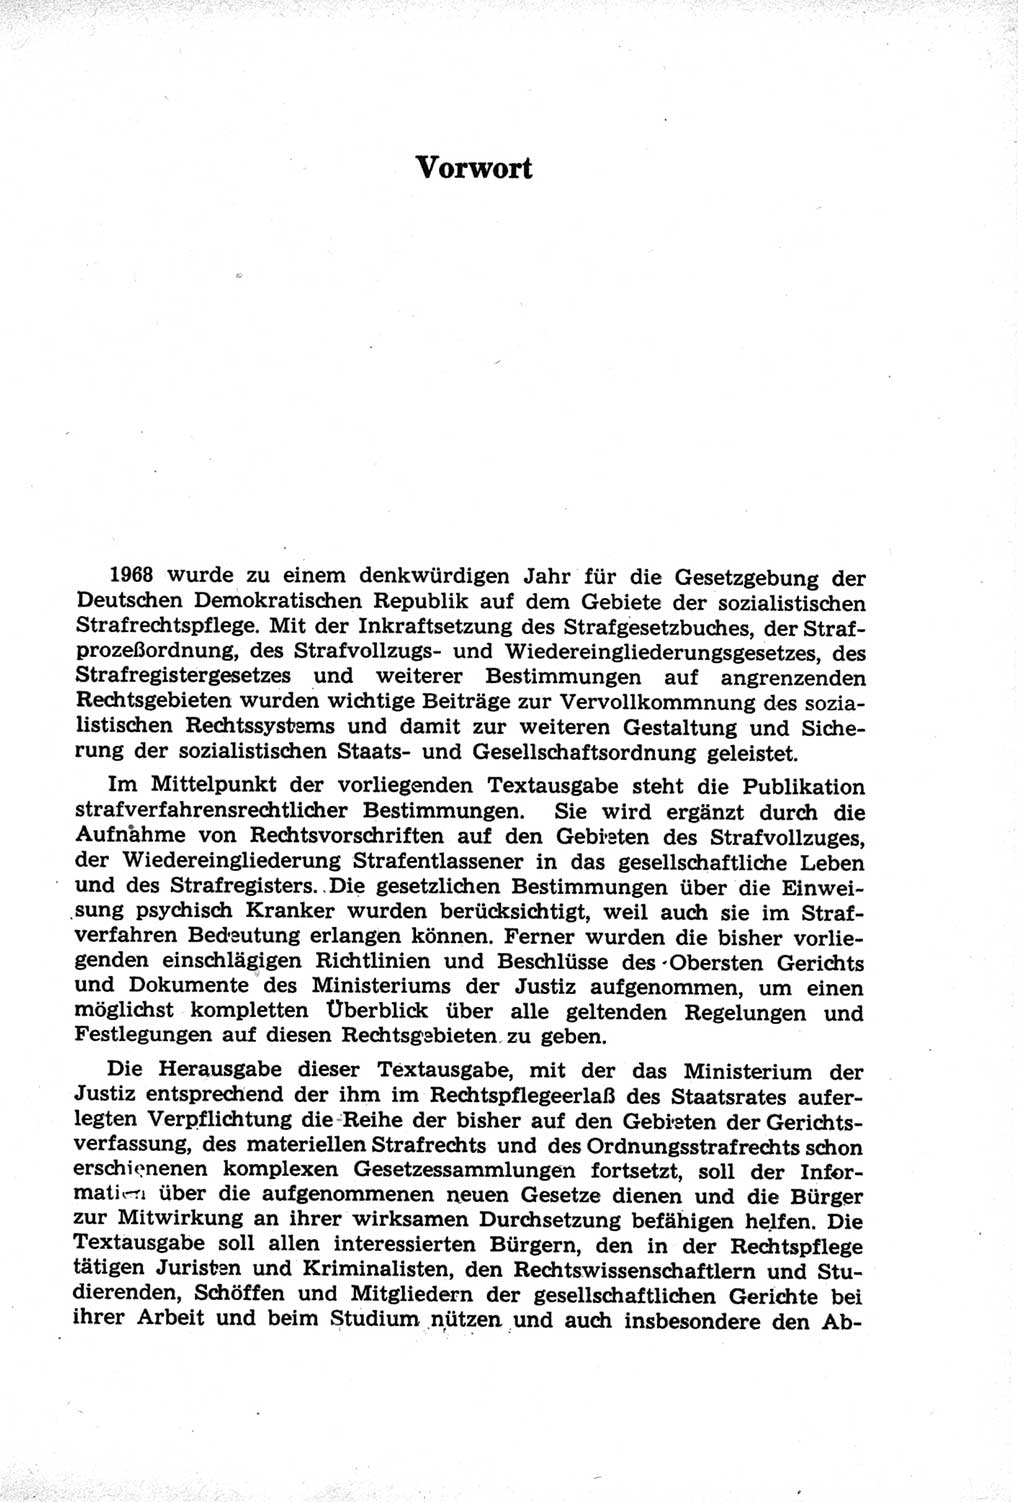 StrafprozeÃŸordnung (StPO) der Deutschen Demokratischen Republik (DDR) und angrenzende Gesetze und Bestimmungen 1968, Seite 5 (StPO Ges. Bstgn. DDR 1968, S. 5)